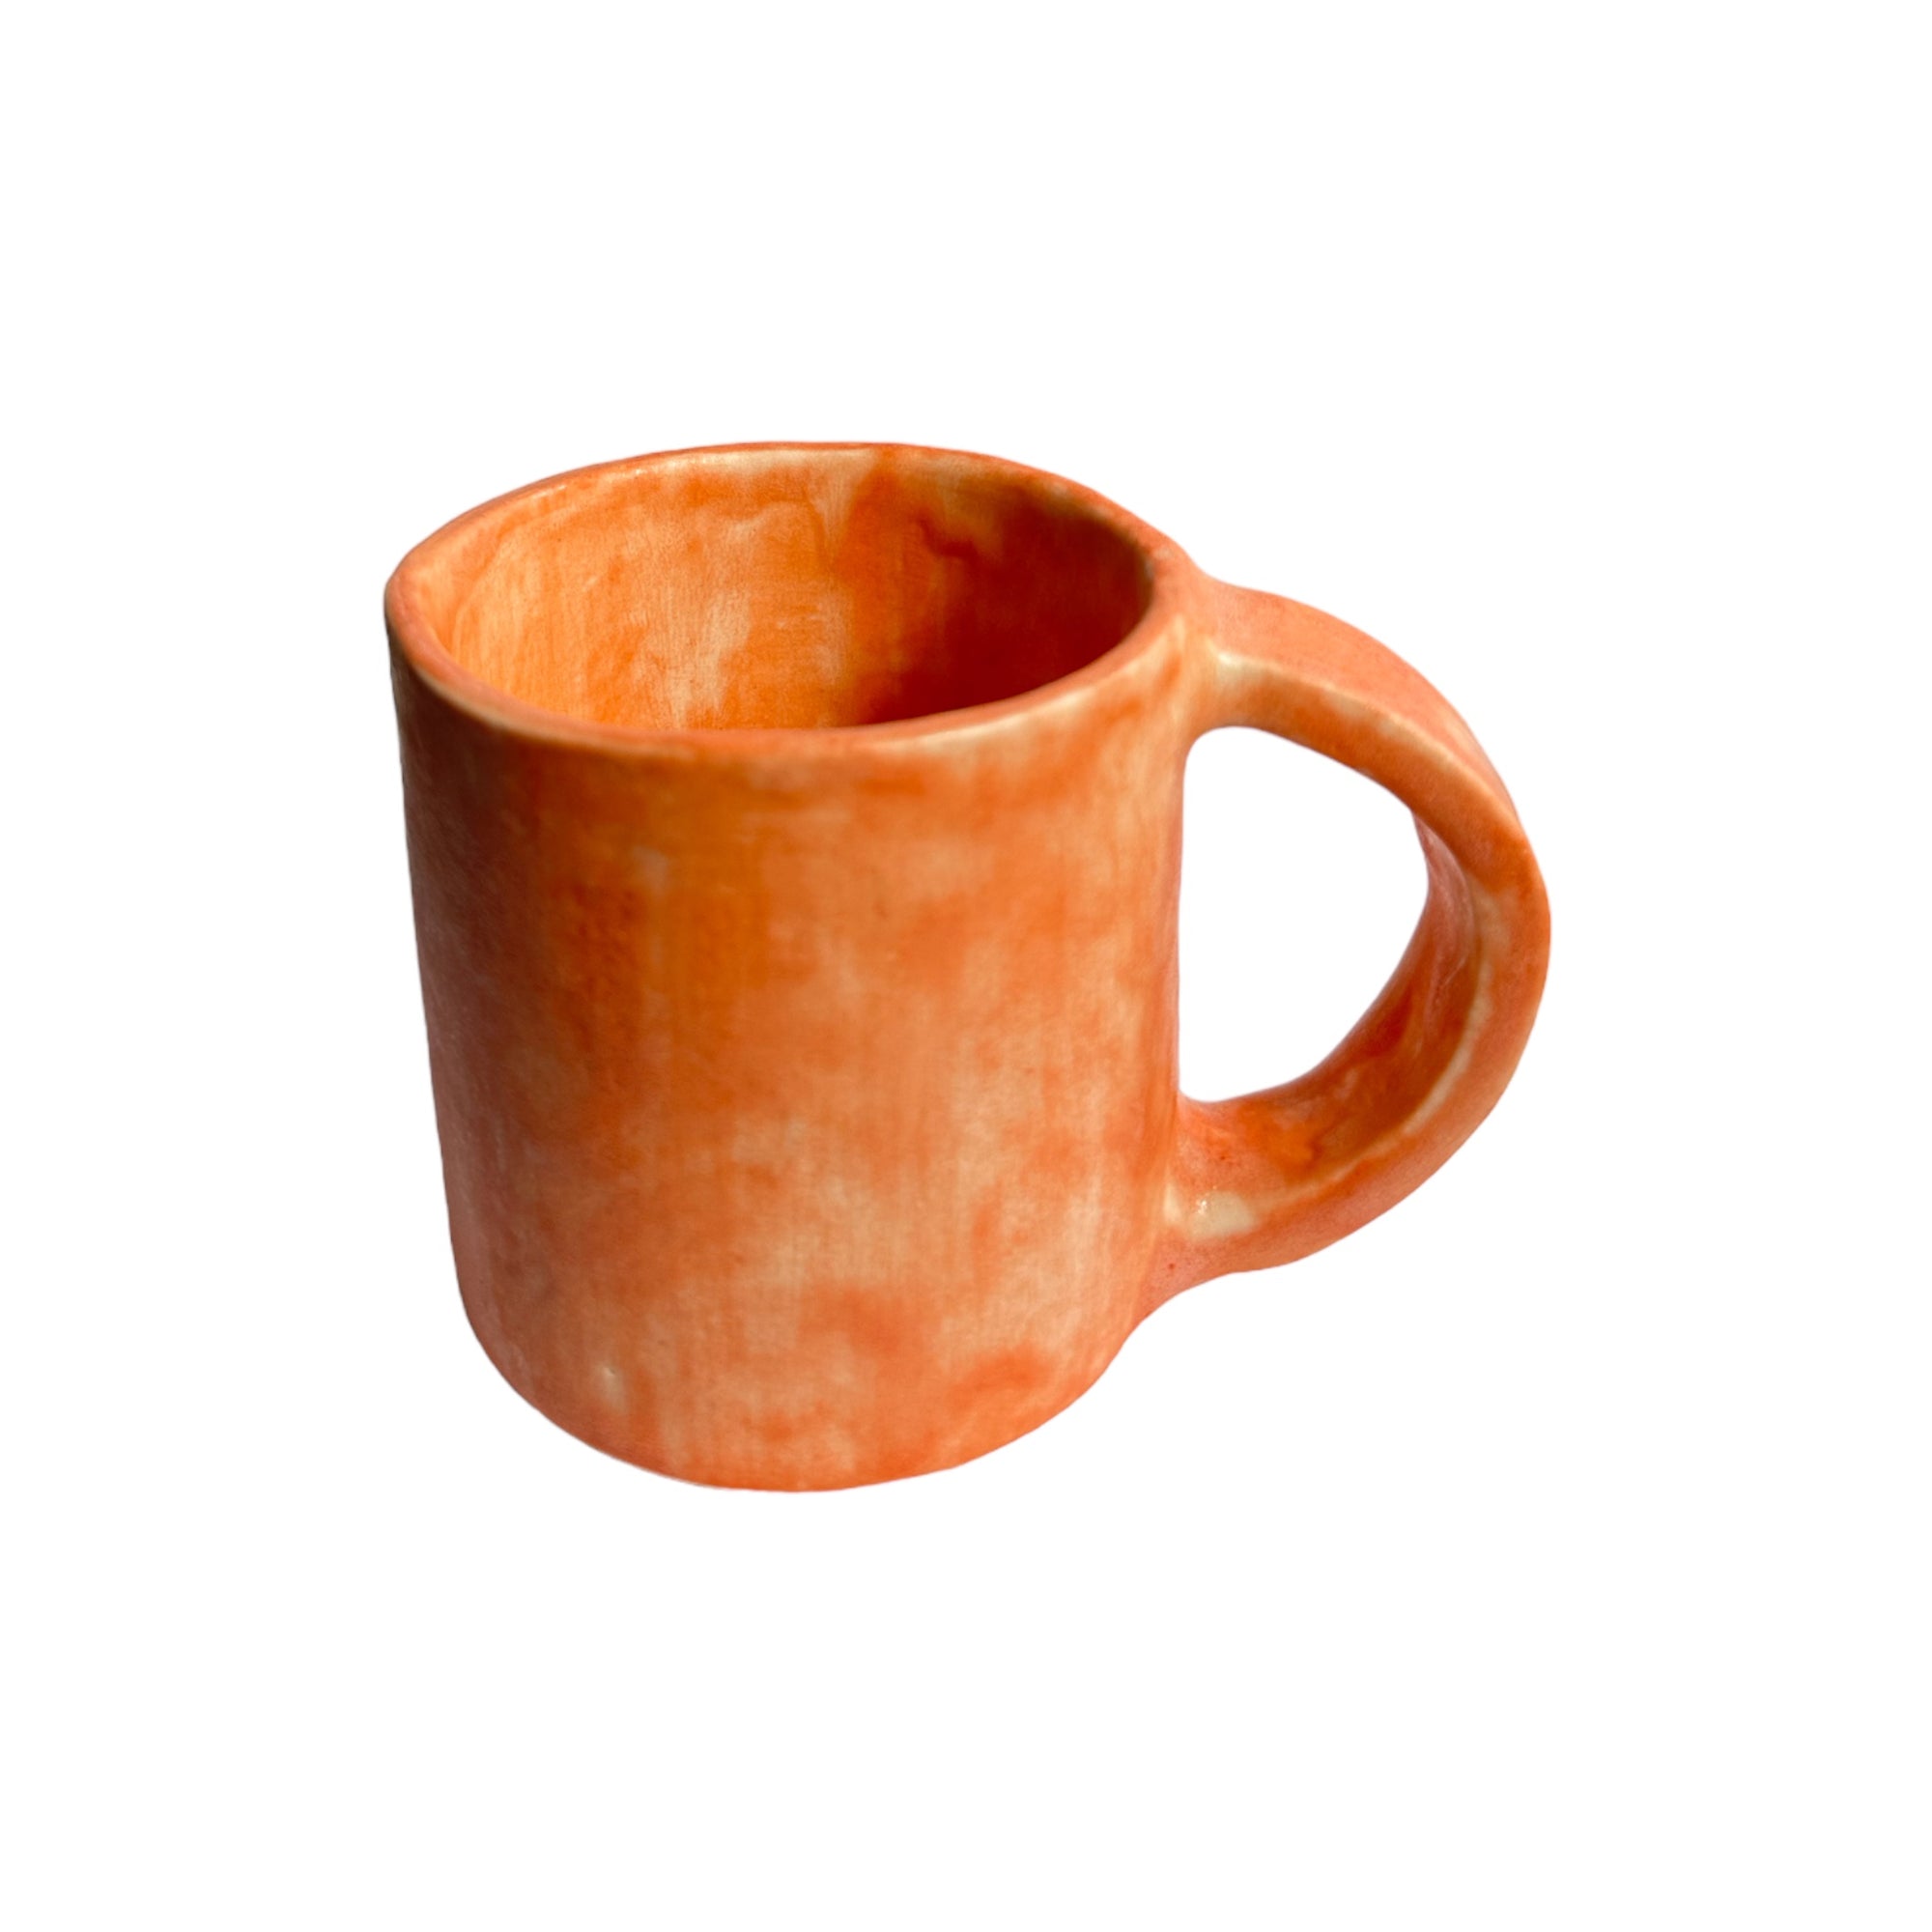 Oaxacan Ceramic Cup - Oaxaca Dawn